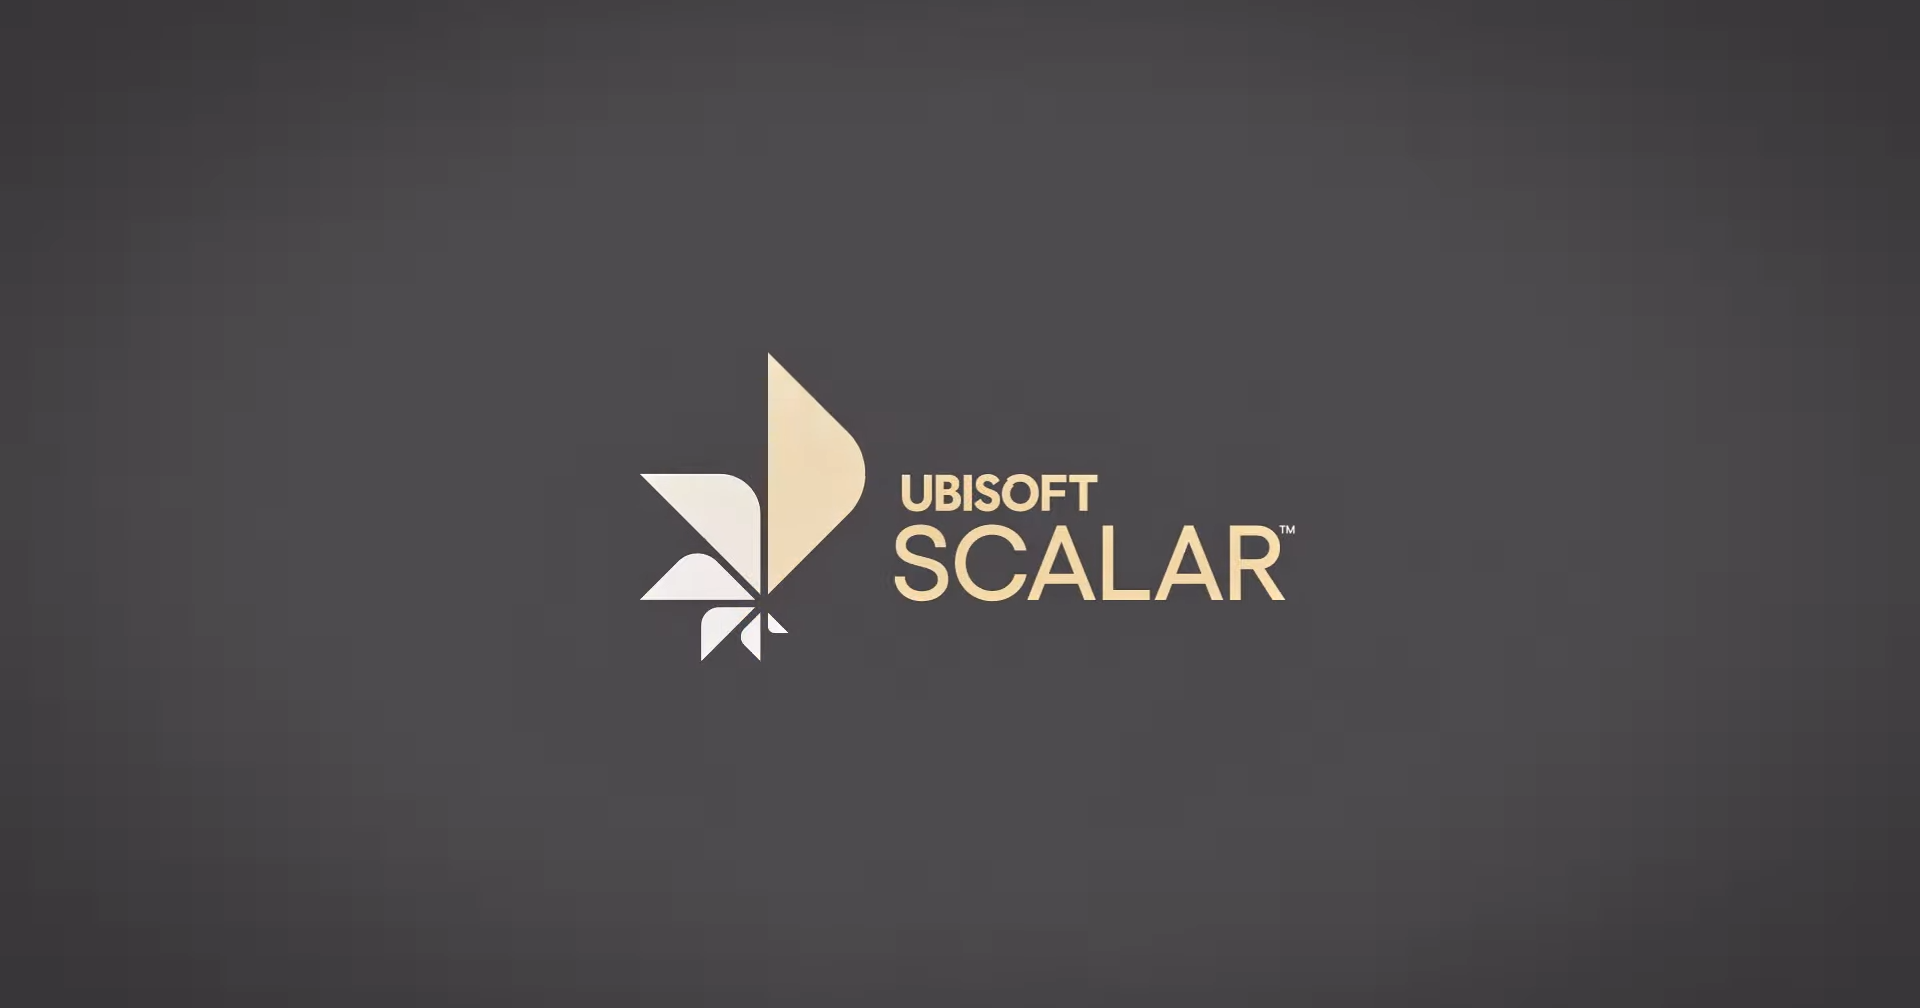 Ubisoft เปิดตัว Scalar เทคโนโลยีคลาวด์ที่จะทำให้สร้างเกมได้อย่างไร้ขีดจำกัด